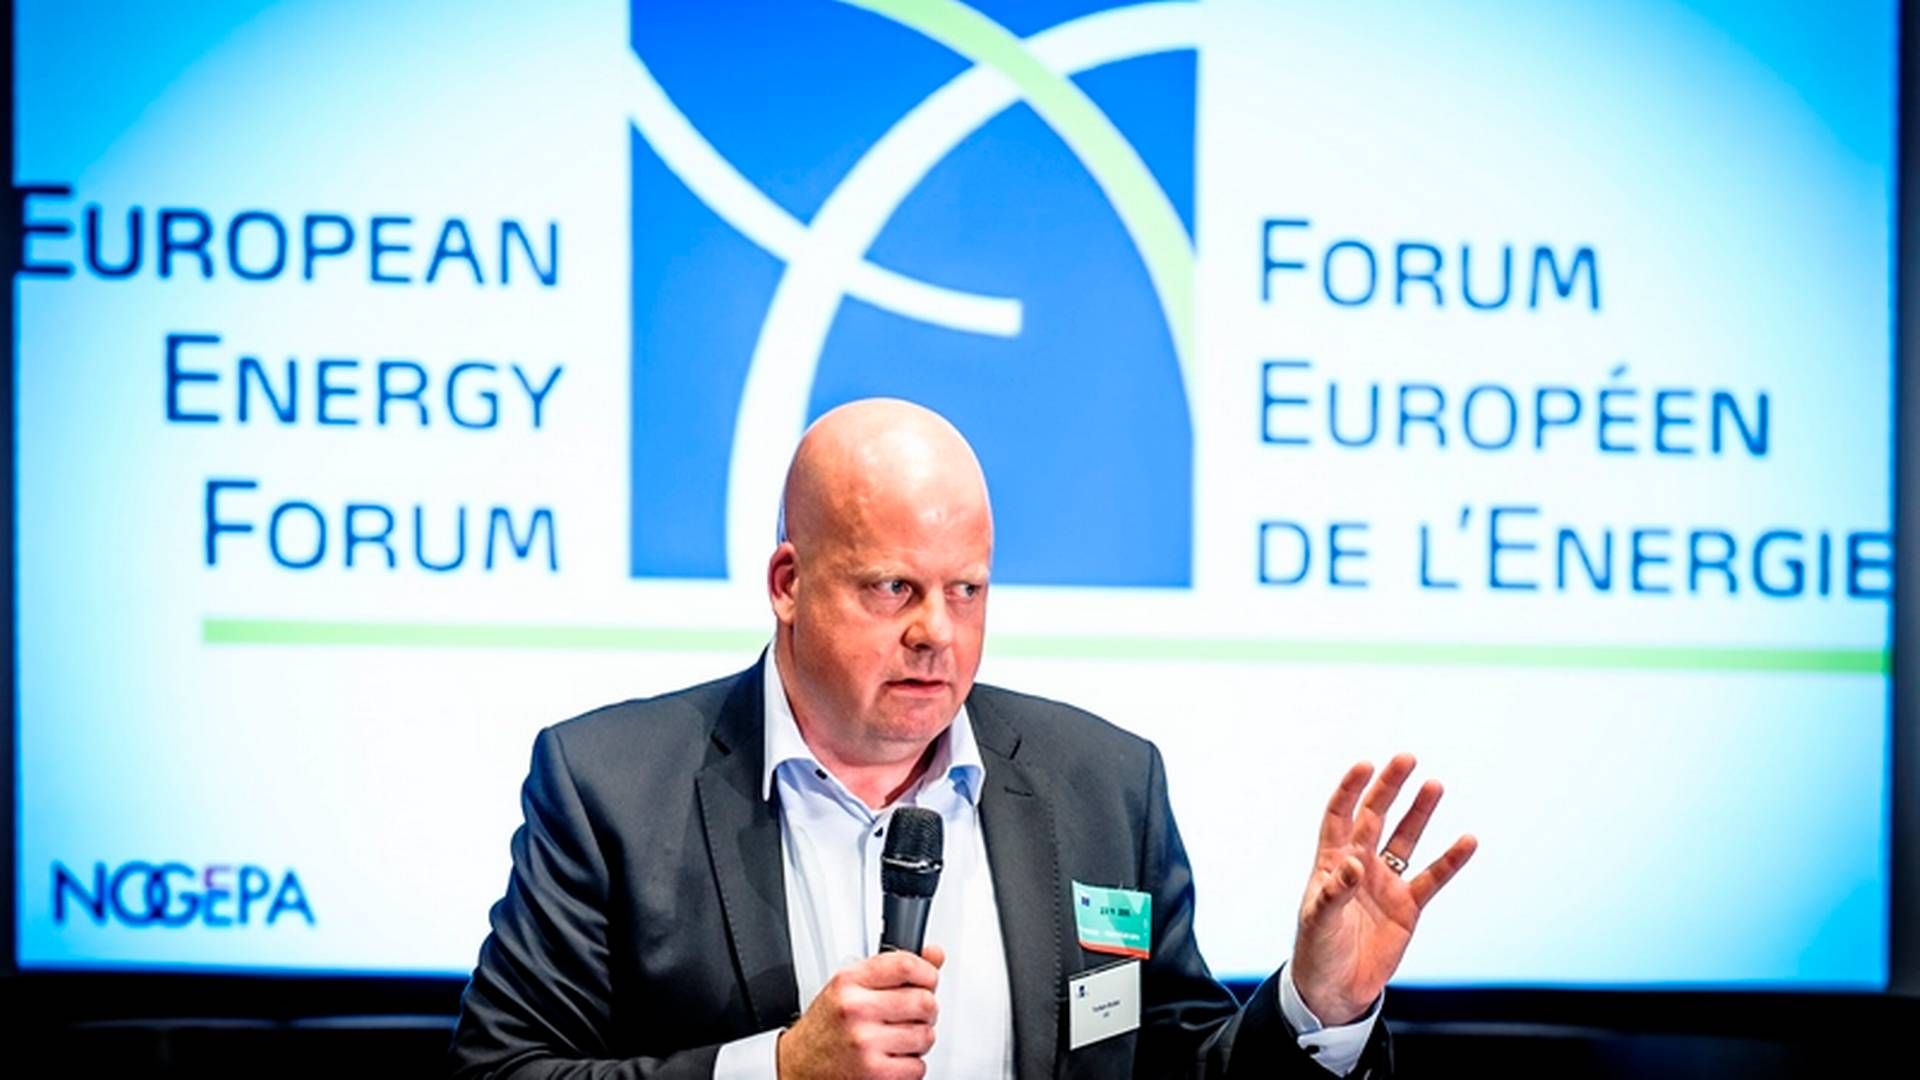 MILLIARDOVERSKRIDELSE: Torben Brabo, Internasjonal direktør i Energinet, må konstatere at Baltic Pipe blir dyrere enn forventet. | Foto: European Energy Forum